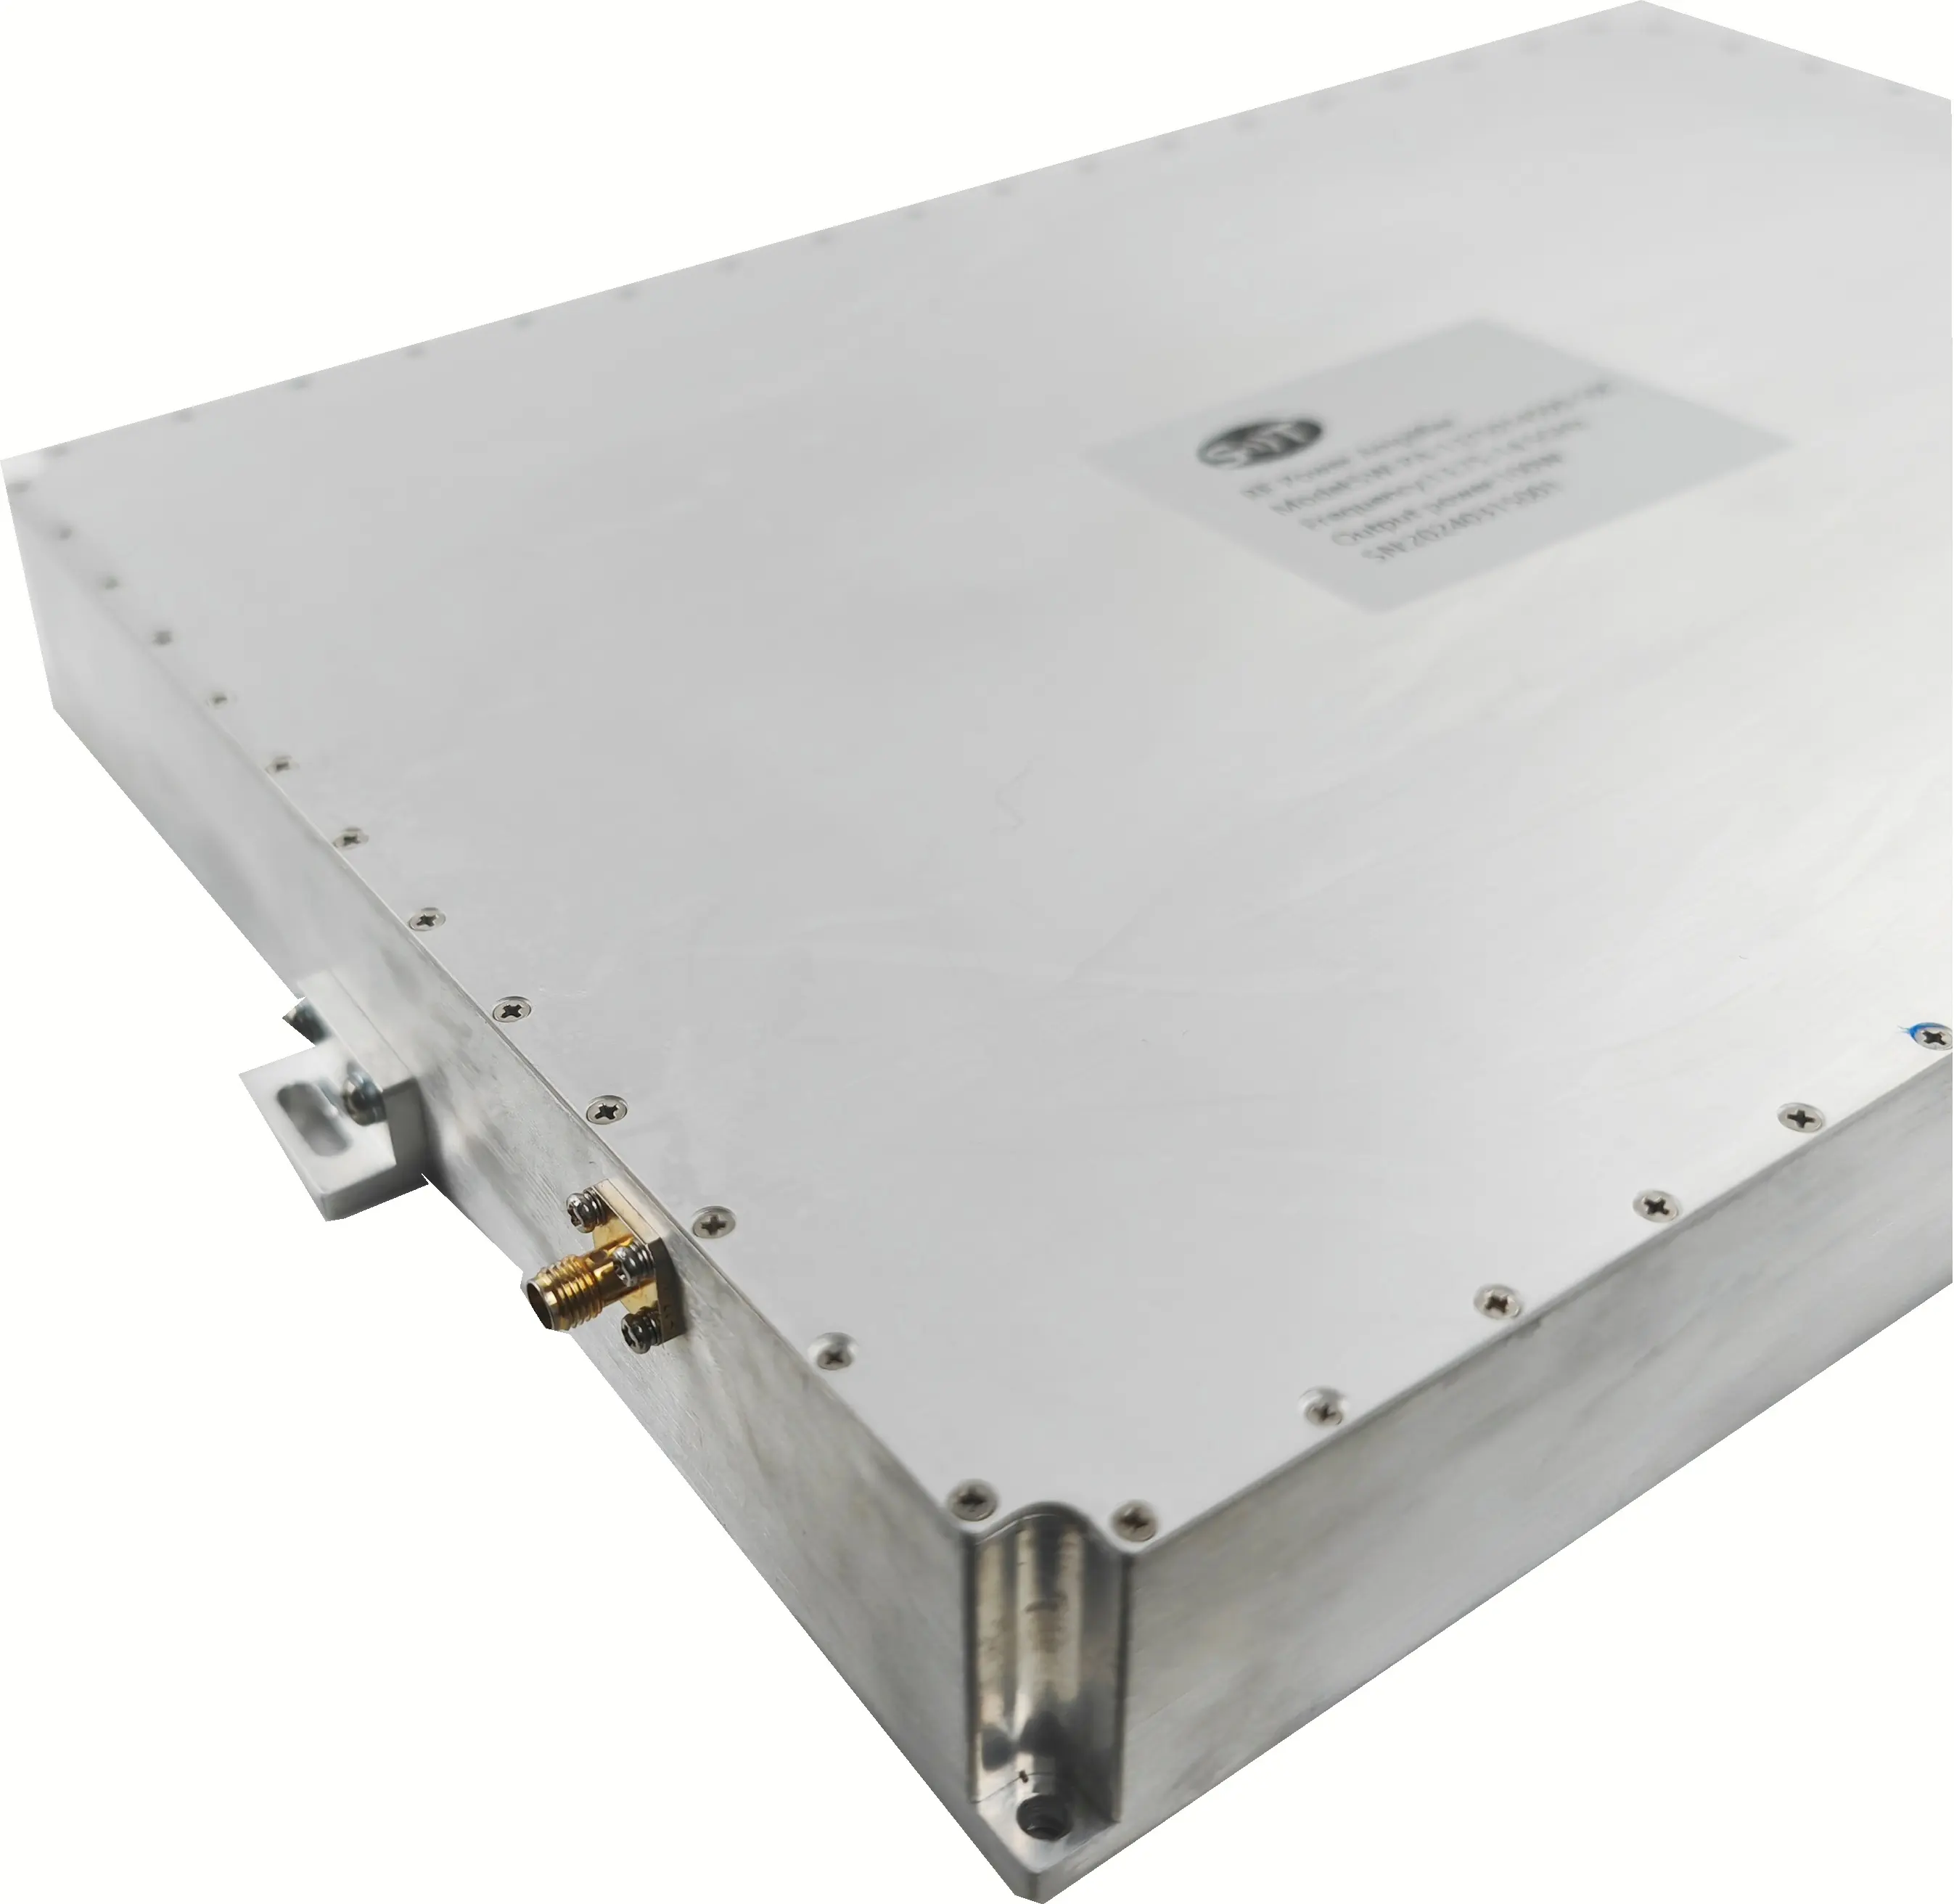 Uydu iletişimi için özelleştirilmiş servis rf modülü 13.75-14.5GHz 100W RF güç amplifikatörü modülü